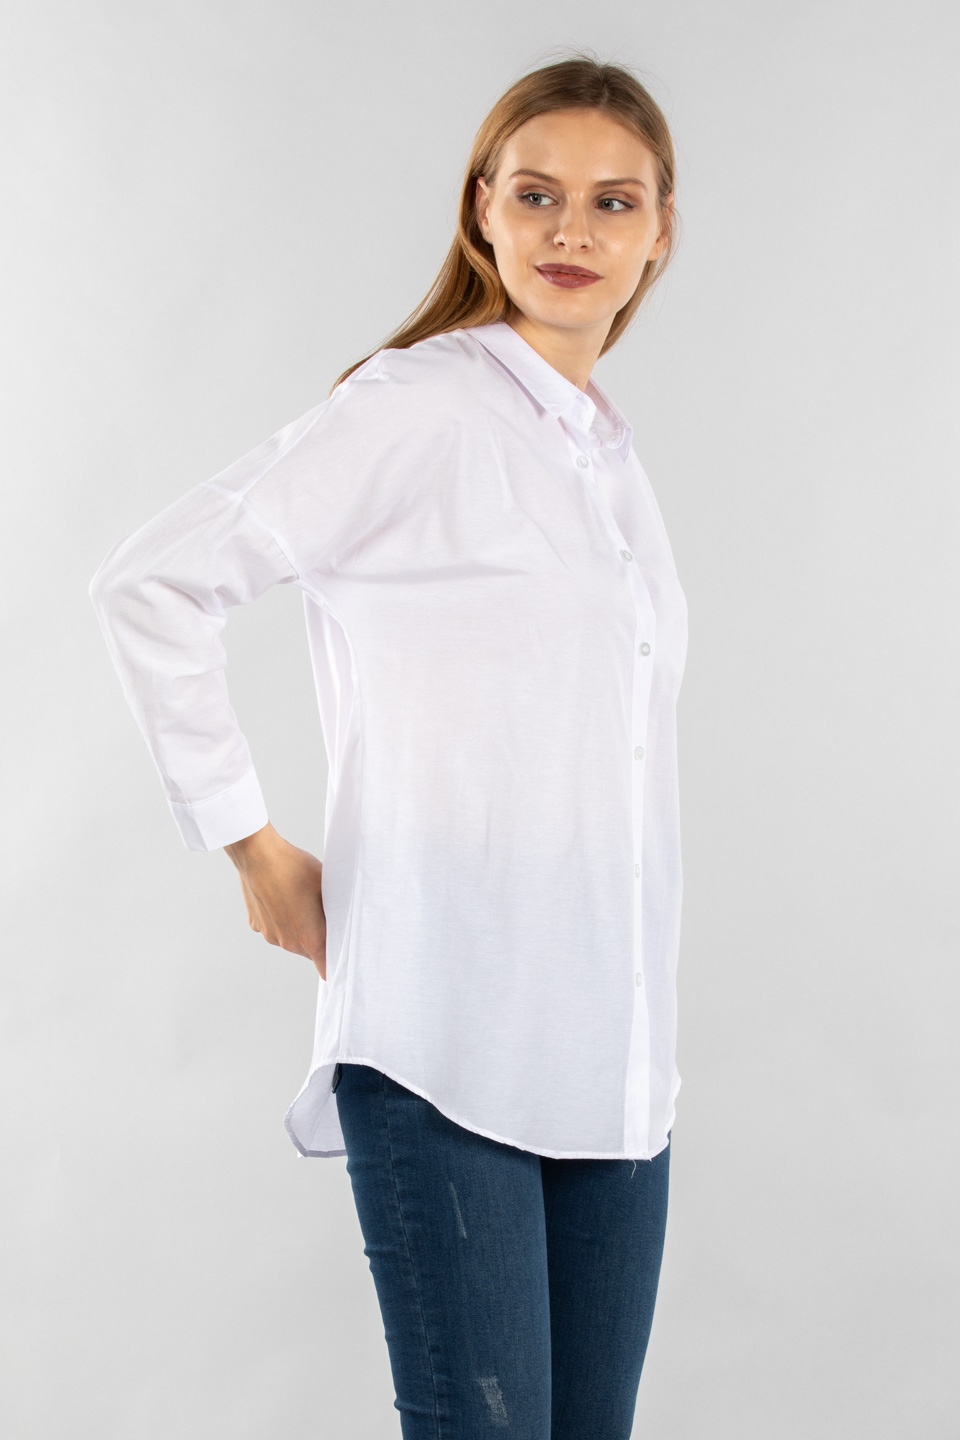 Tunik gömlek-3013 Beyaz